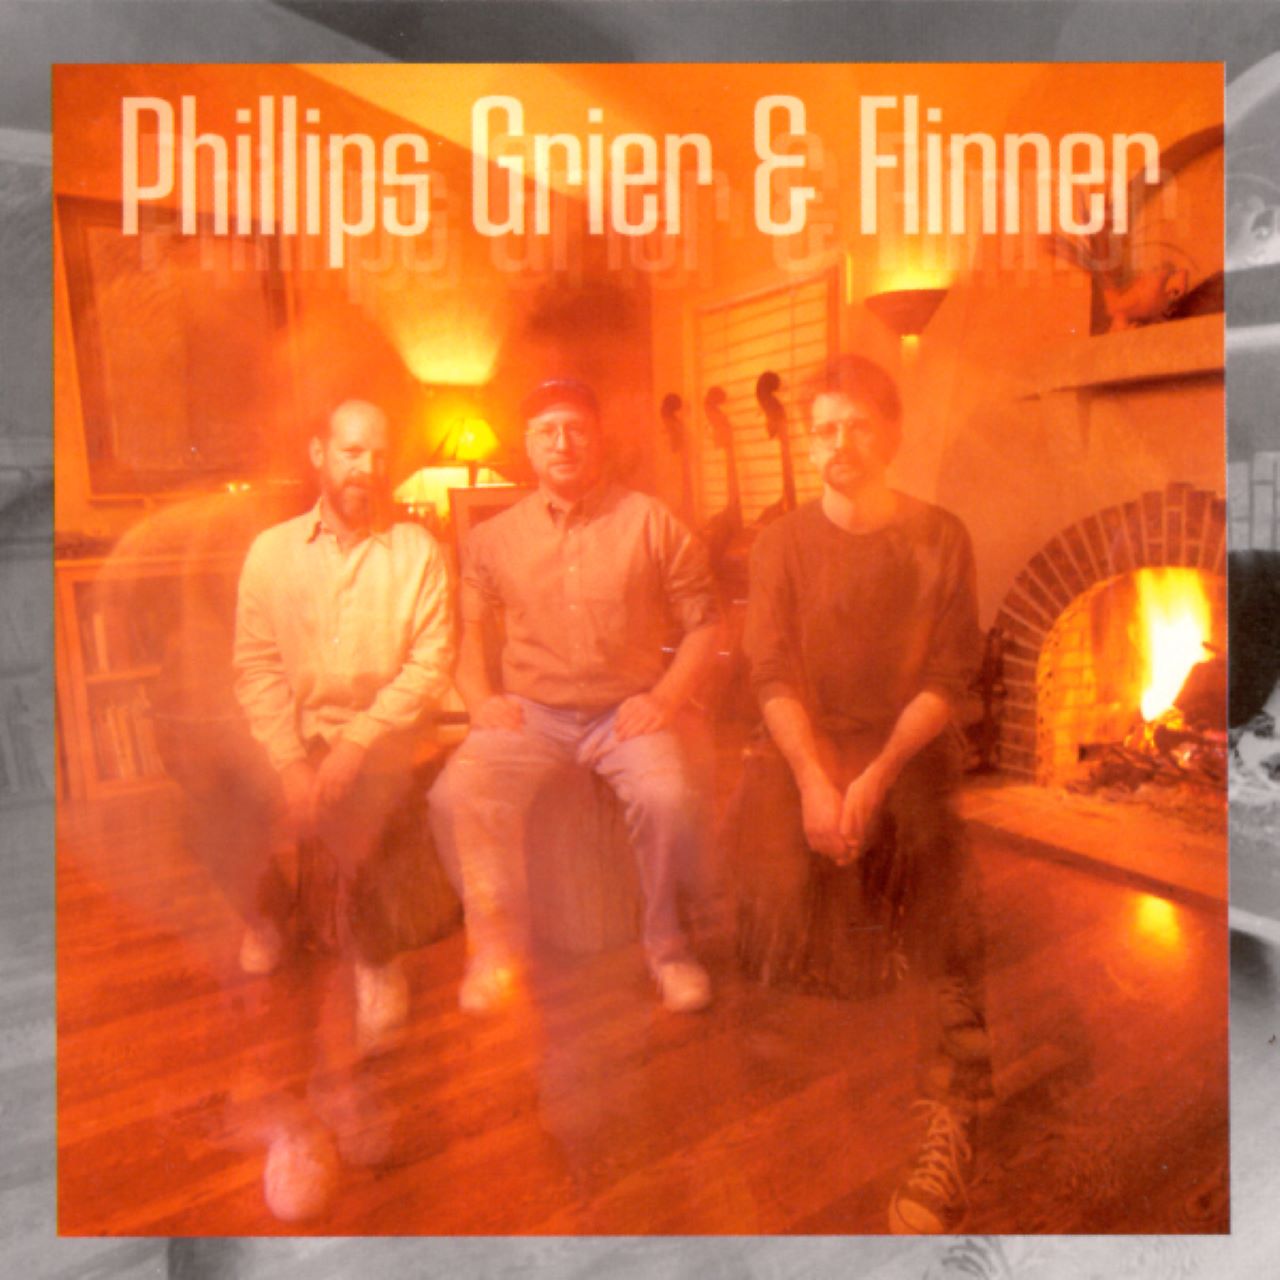 Phillips, Grier & Flinner - Phillips, Grier & Flinner cover album